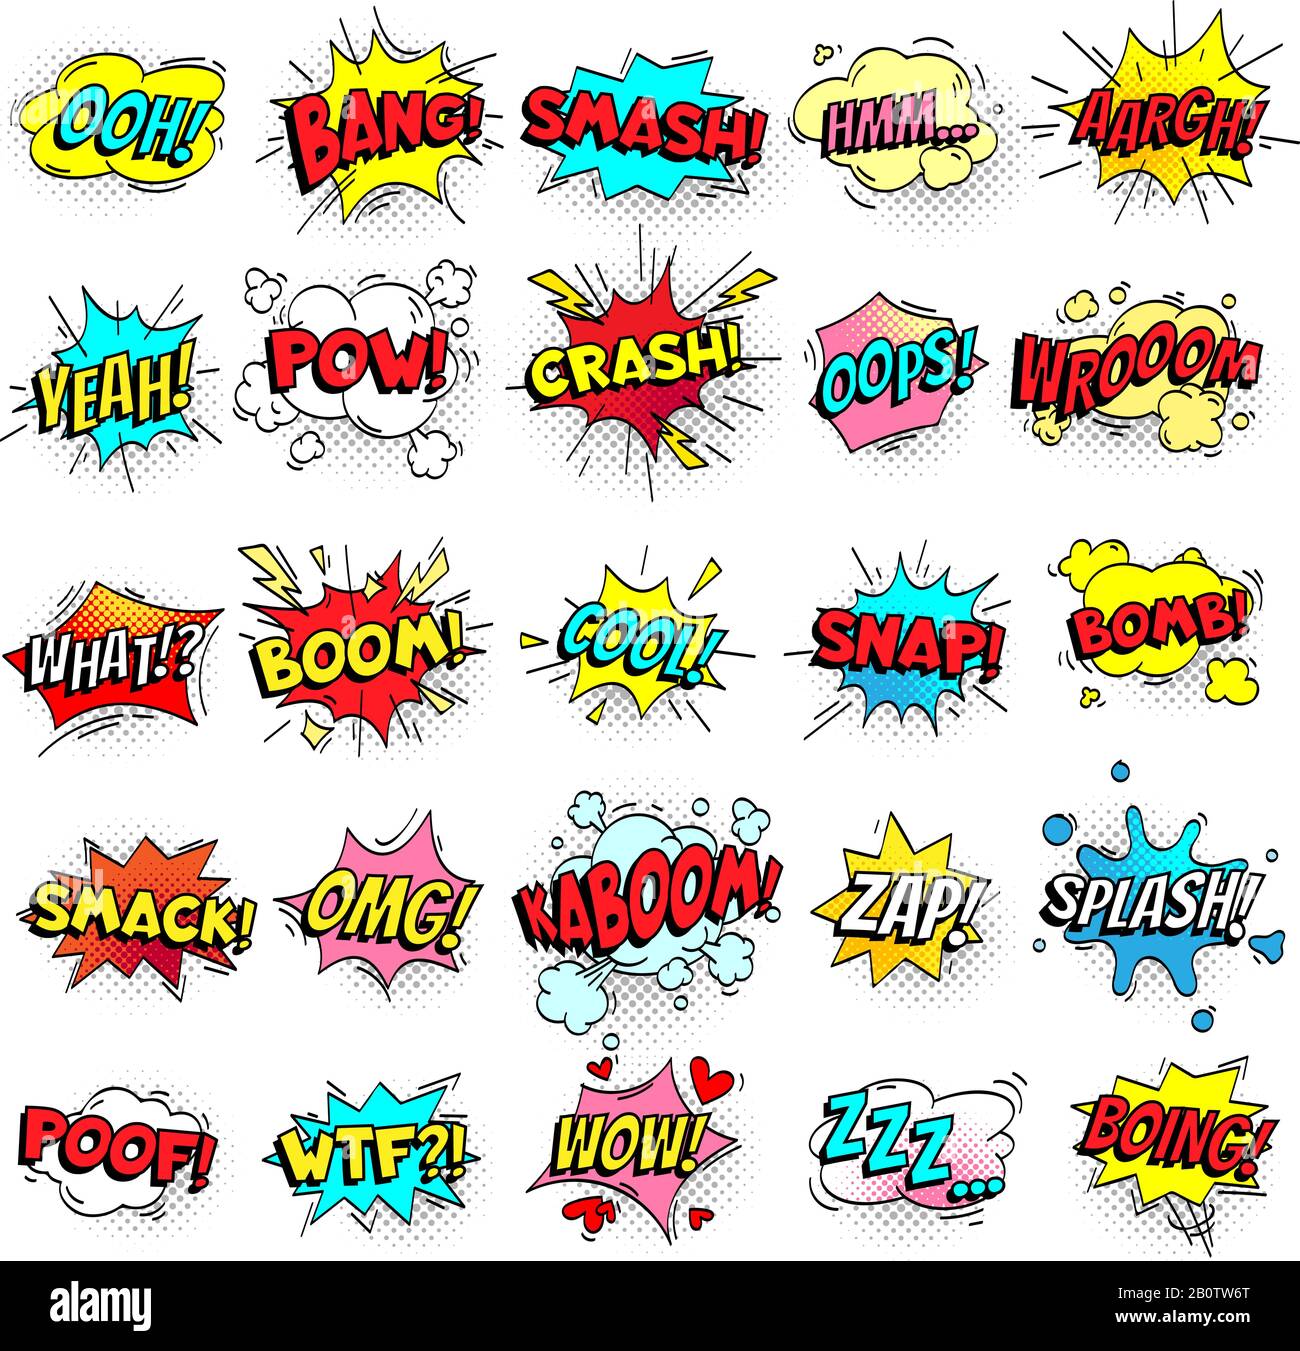 Ausrufeschreiben von komischen Zeichen auf Sprechblasen. Cartoon-Crash, Pow, Bombe, Wham, Oops und cooler Comic-Zeichensatz Stock Vektor